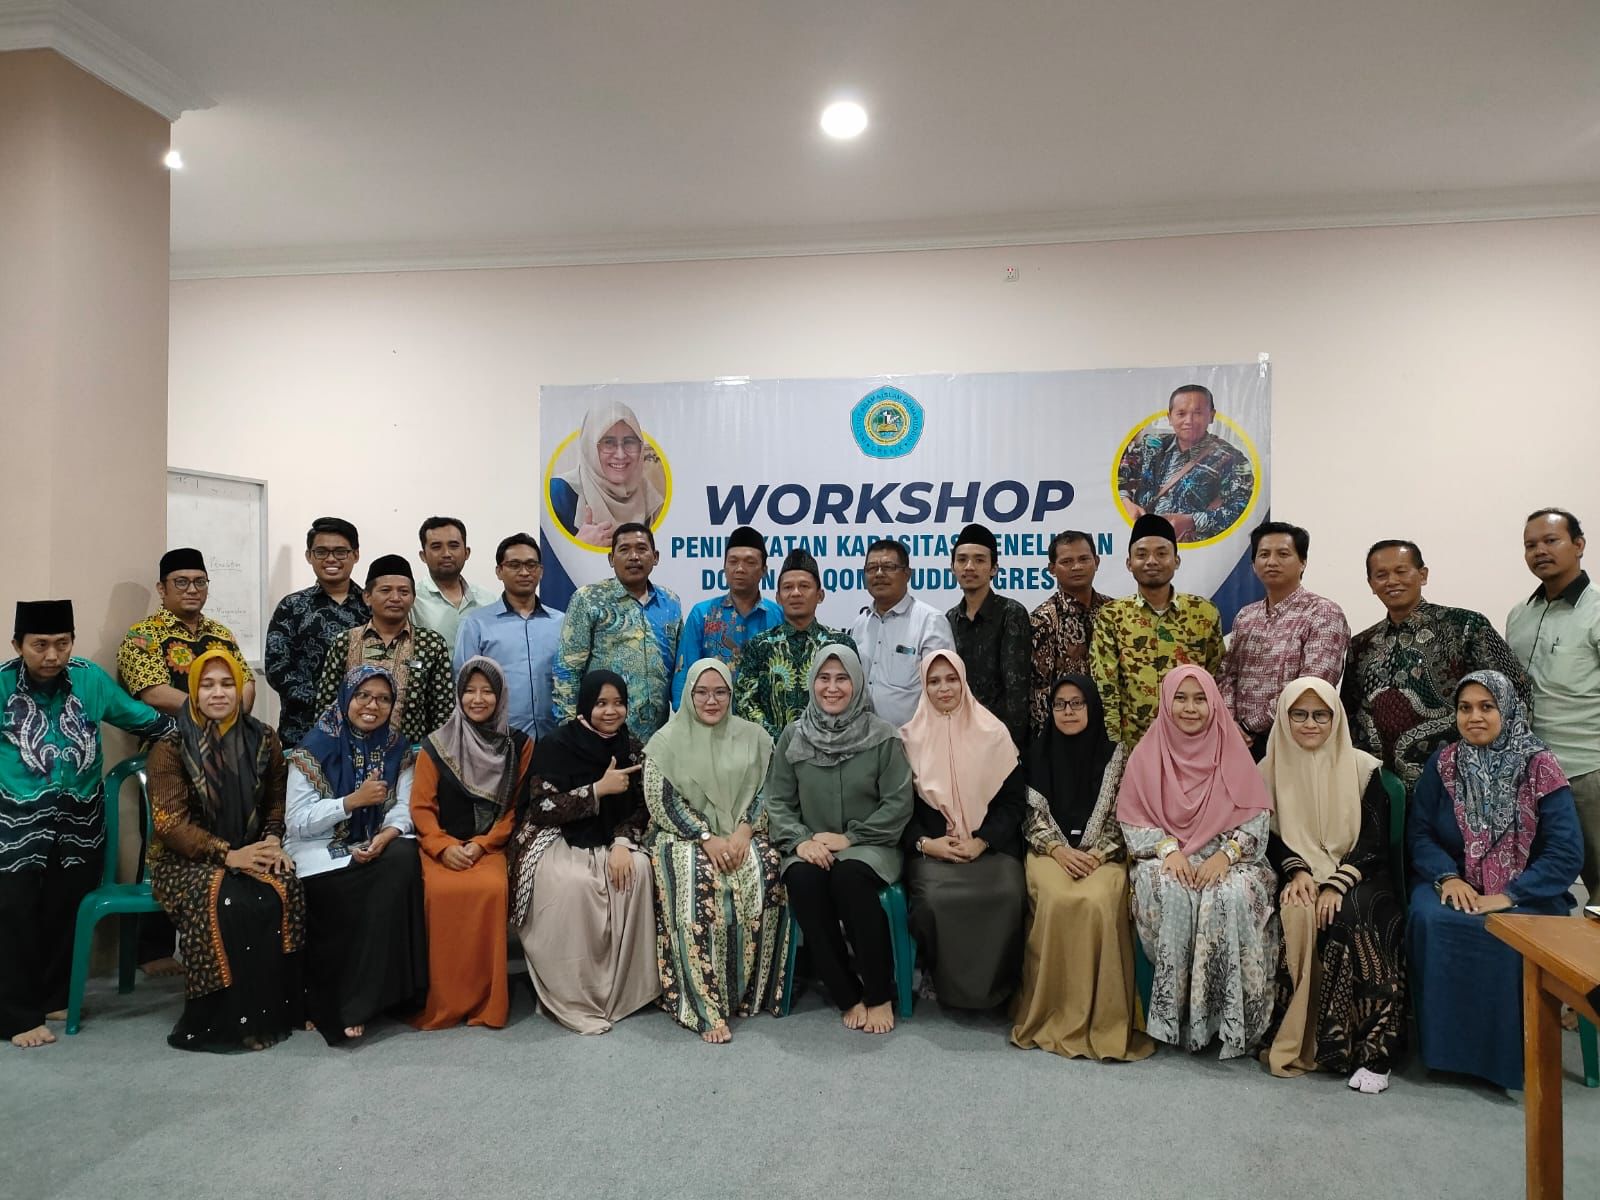 Sesi foto bersama setelah acara Workshop Peningkatan Kapasitas Penelitian Dosen IAI Qomaruddin Gresik di Aula IAI Qomaruddin pada Selasa 19 Juli 2022. Foto: Ririn/QOM.